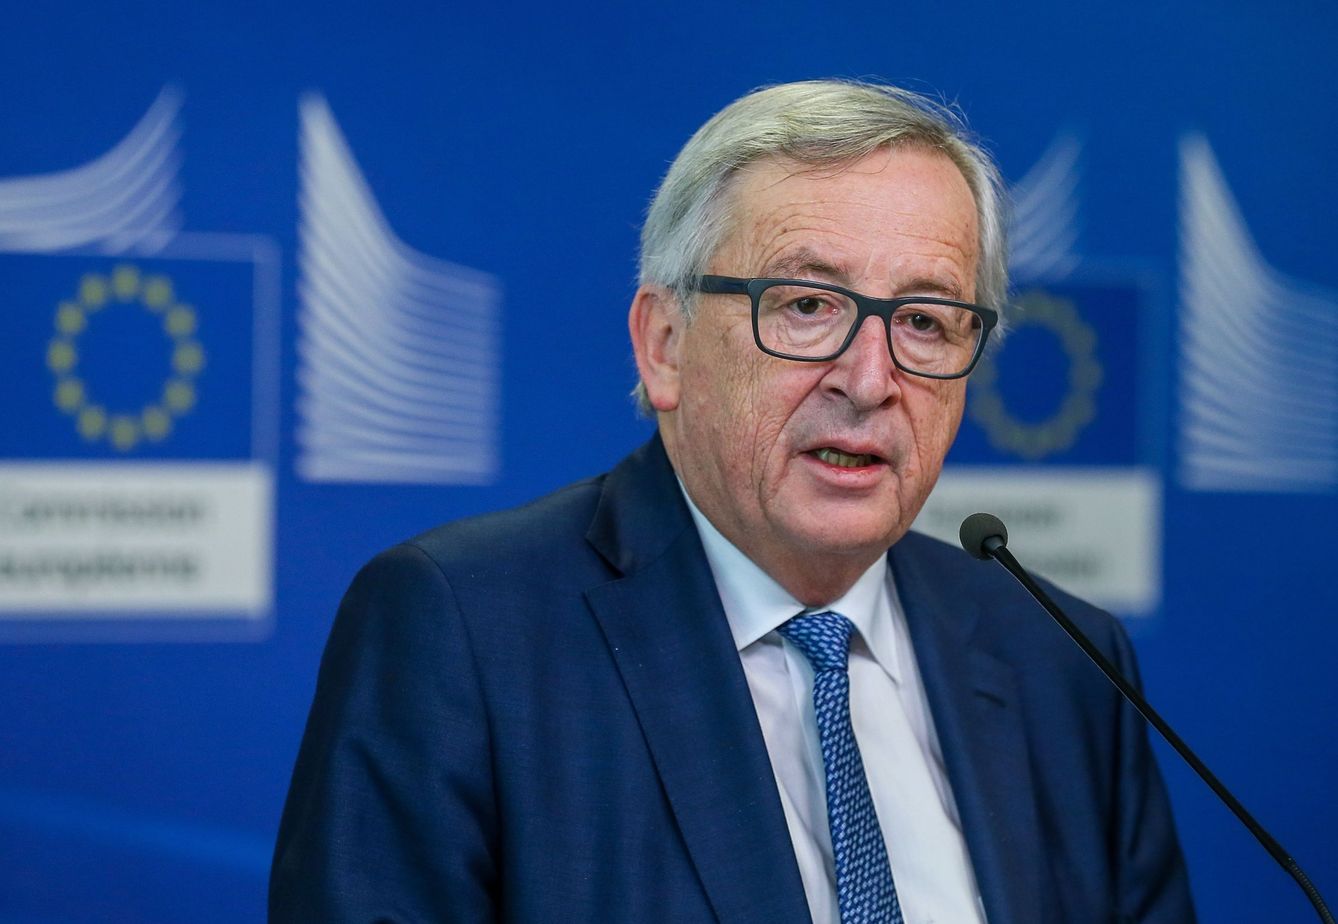  El presidente de la Comisión Europea, Jean-Claude Juncker, en una rueda de prensa en Bruselas, hoy, 14 de febrero de 2018. (EFE)